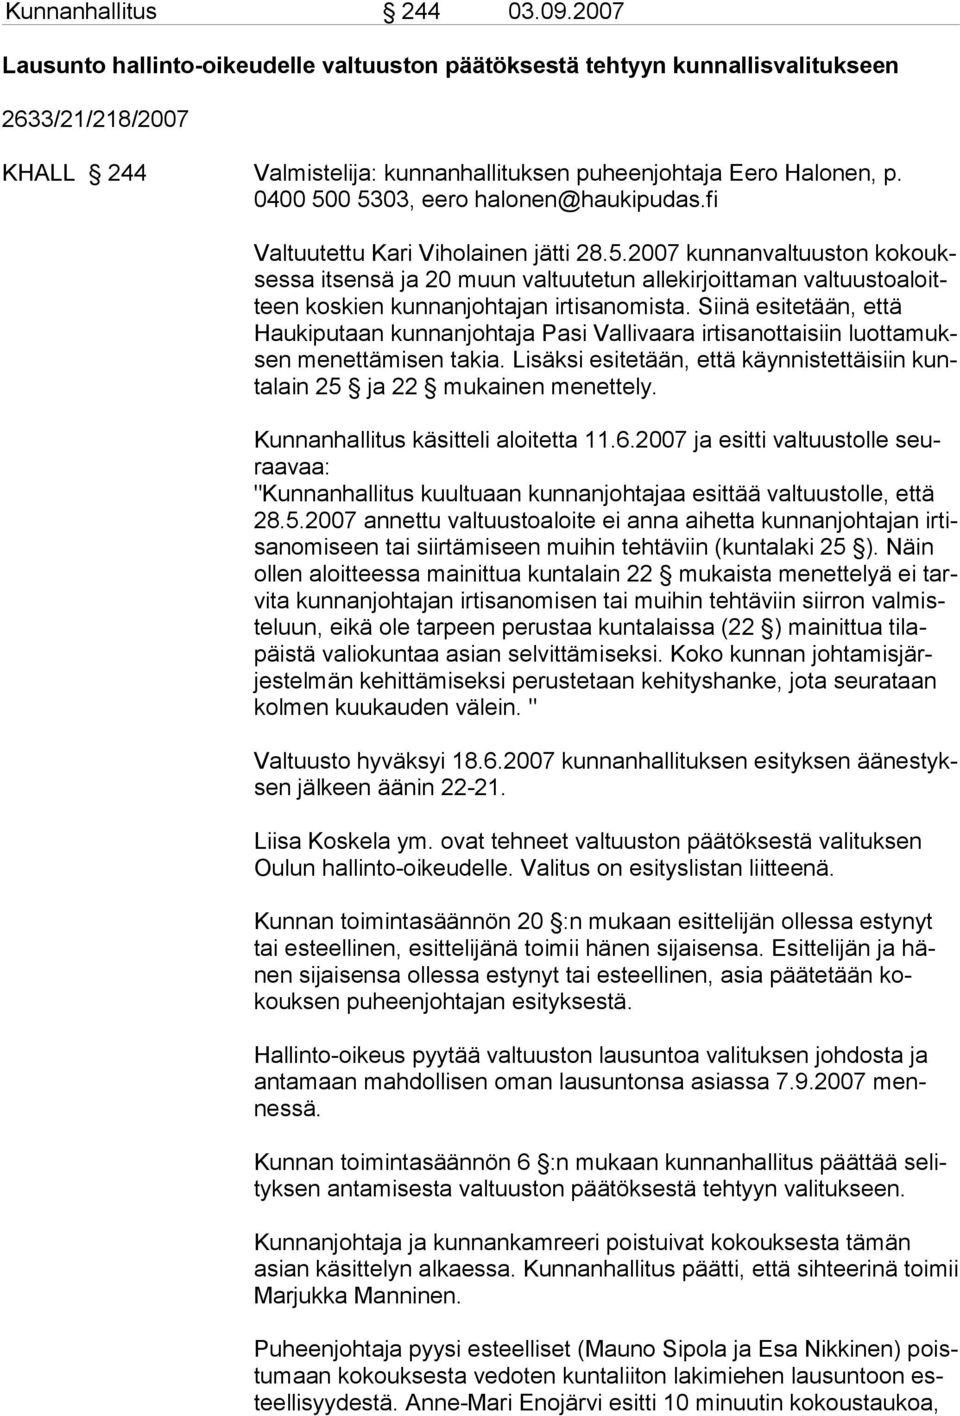 Siinä esitetään, että Haukiputaan kunnanjohtaja Pasi Vallivaara irtisanottaisiin luottamuksen menettämisen takia. Lisäksi esitetään, että käynnistettäisiin kuntalain 25 ja 22 mukainen menettely.